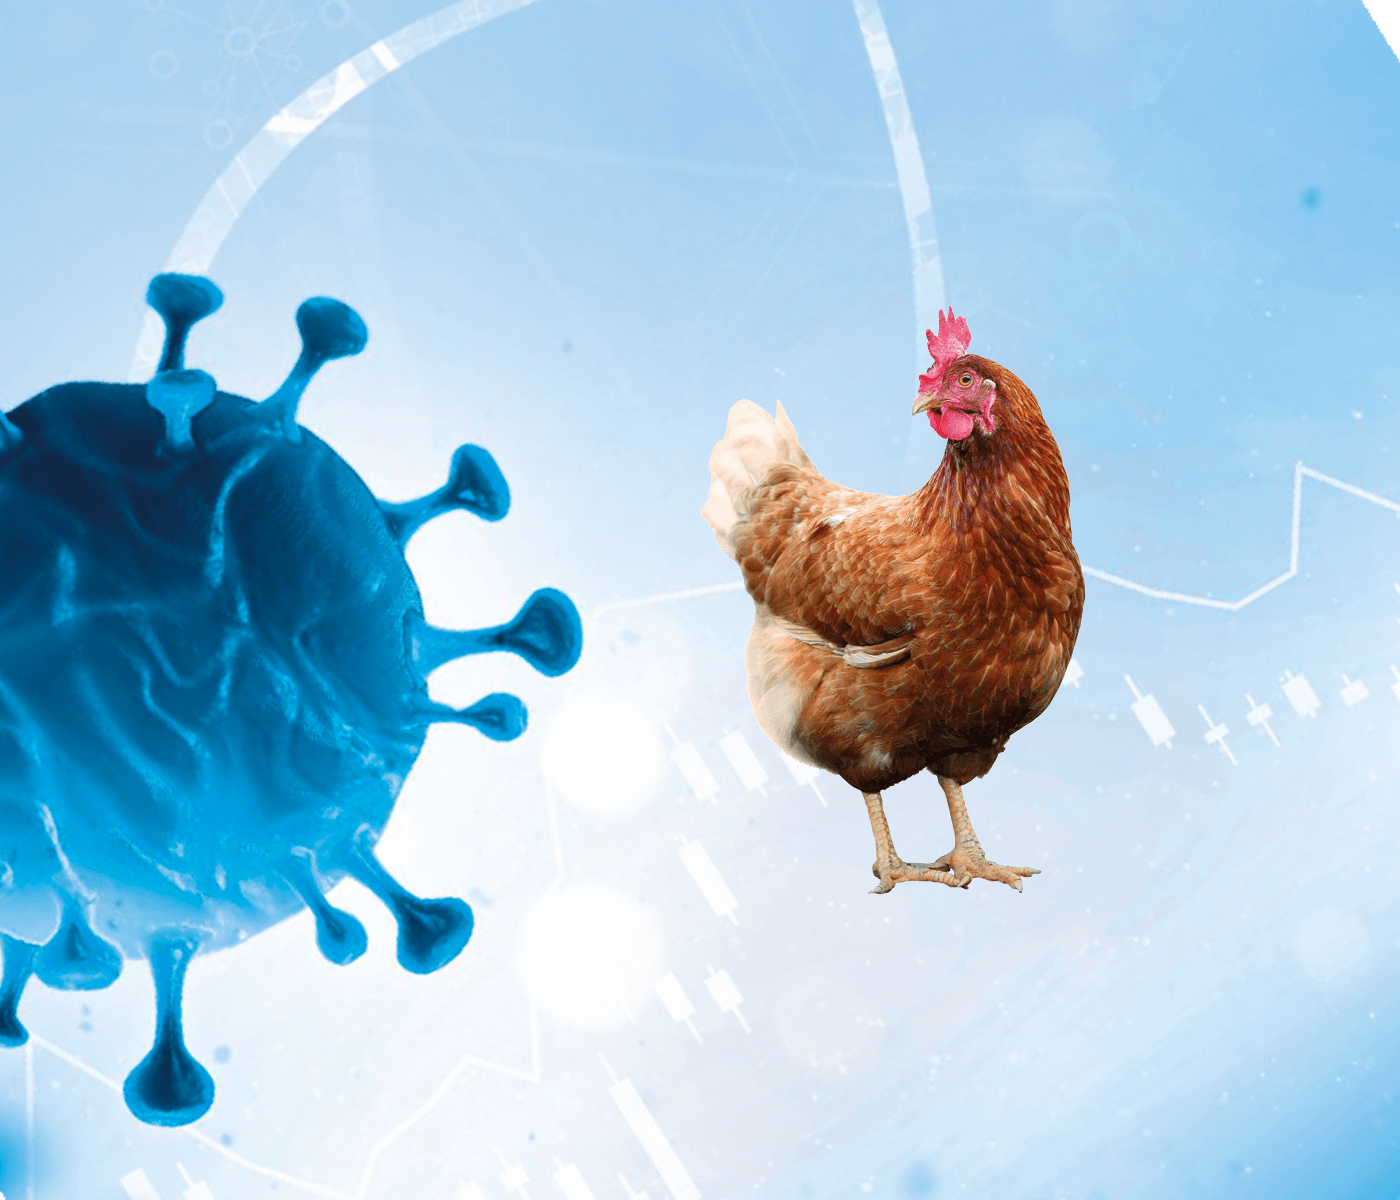 Caso clínico de influenza aviar en ponedoras comerciales